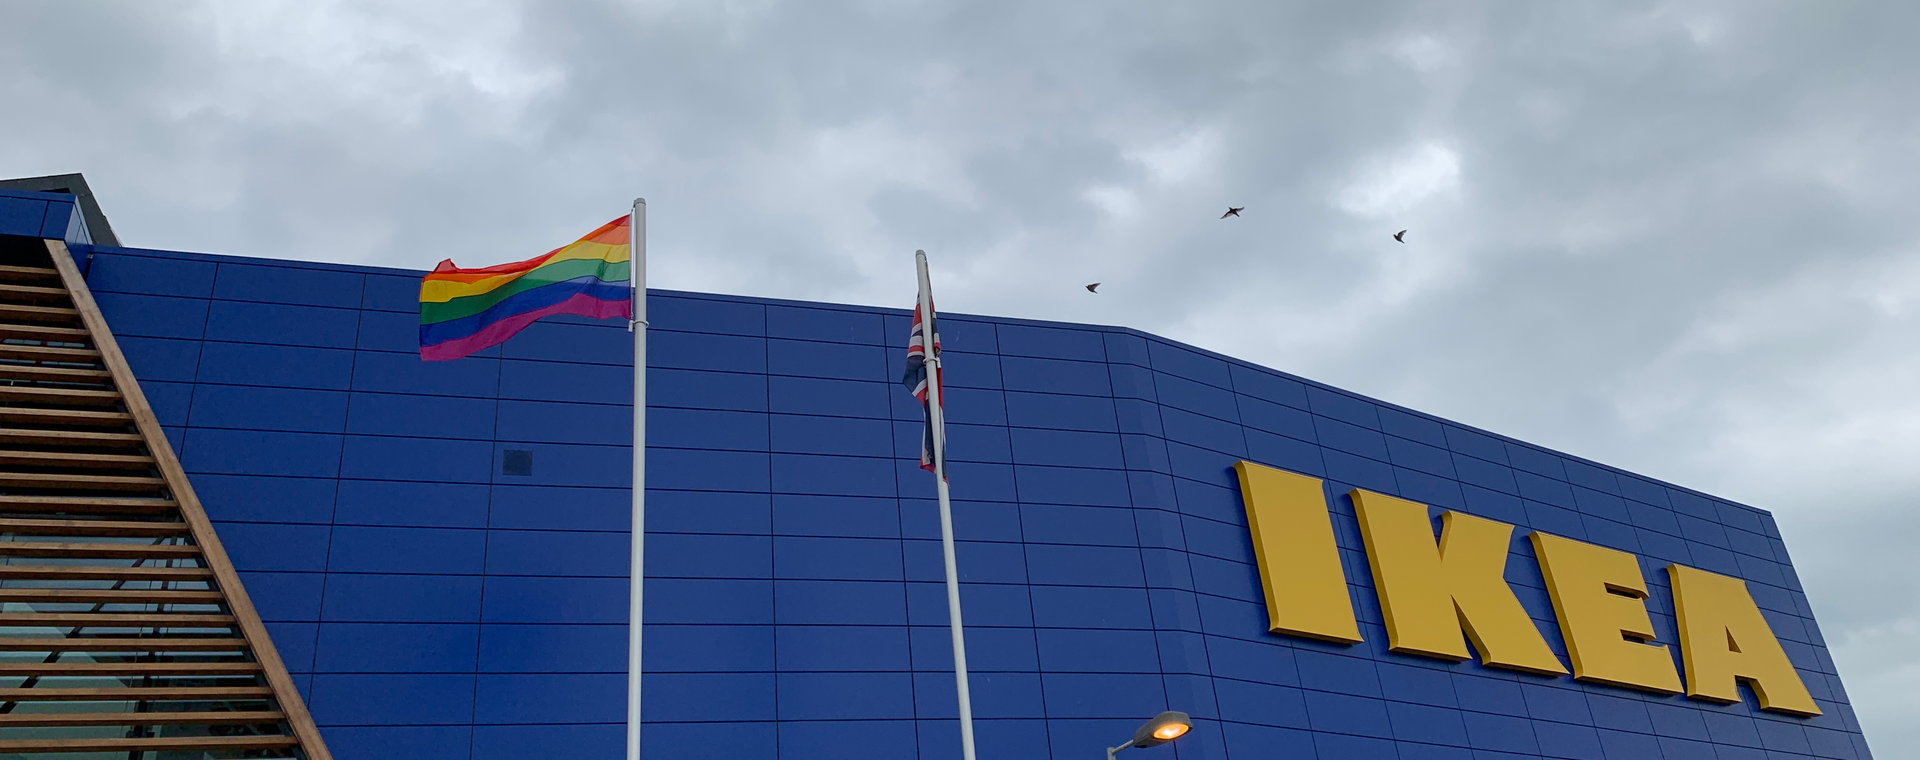 W Ikei nie doszło do dyskryminacji przy zwolnieniu za wpisy atakujące społeczność LGBT